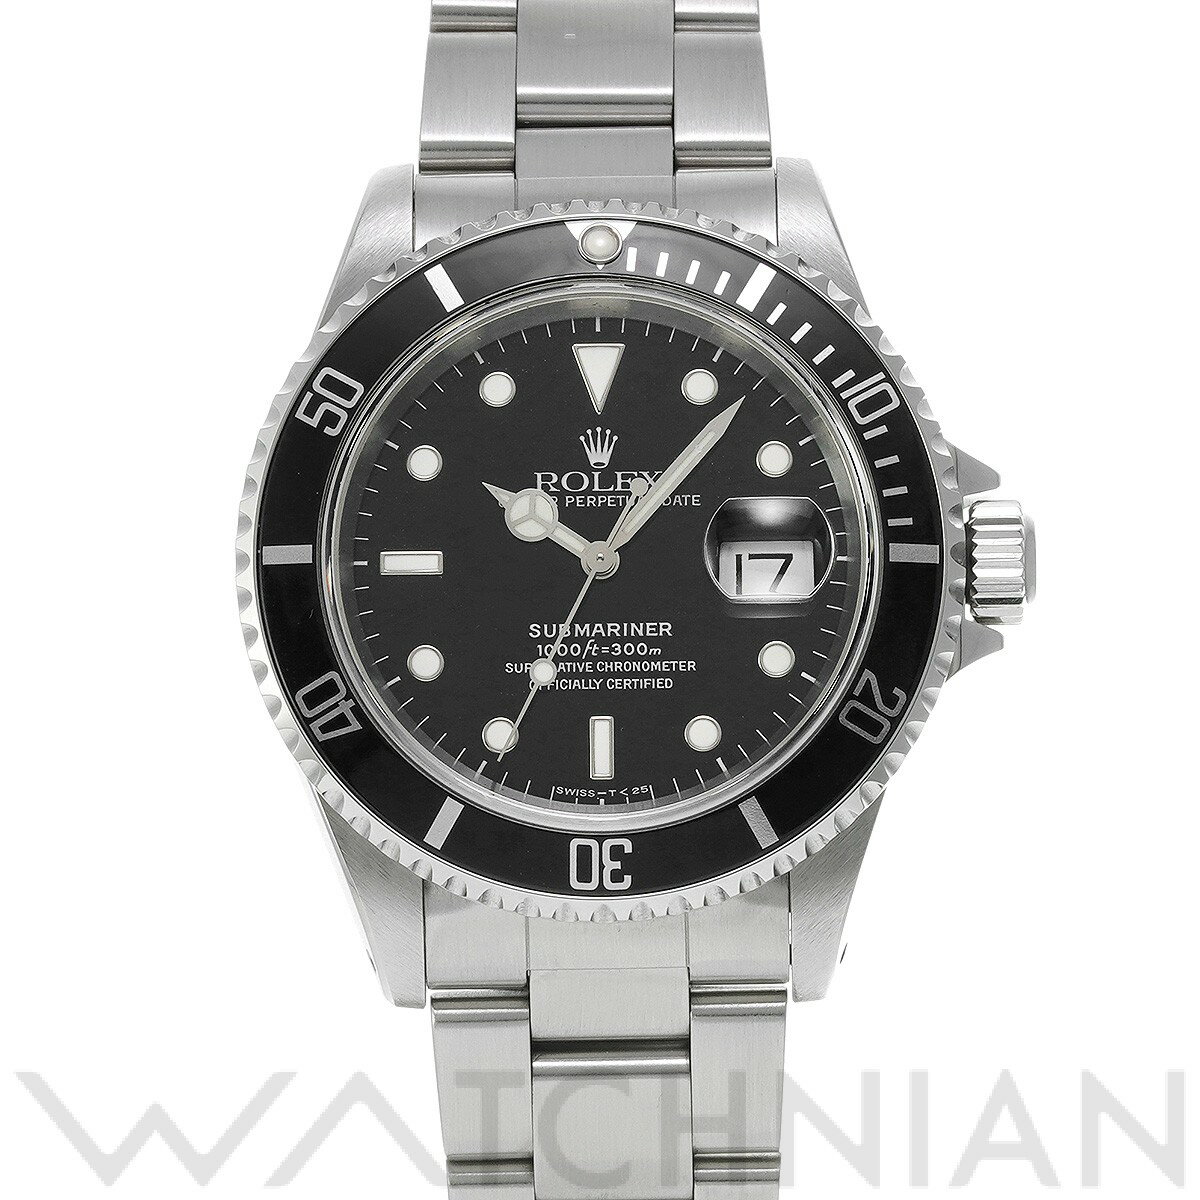 【ローン48回払い無金利】【中古】 ロレックス ROLEX サブマリーナ デイト 16610 U番(1997年頃製造) ブラック メンズ 腕時計